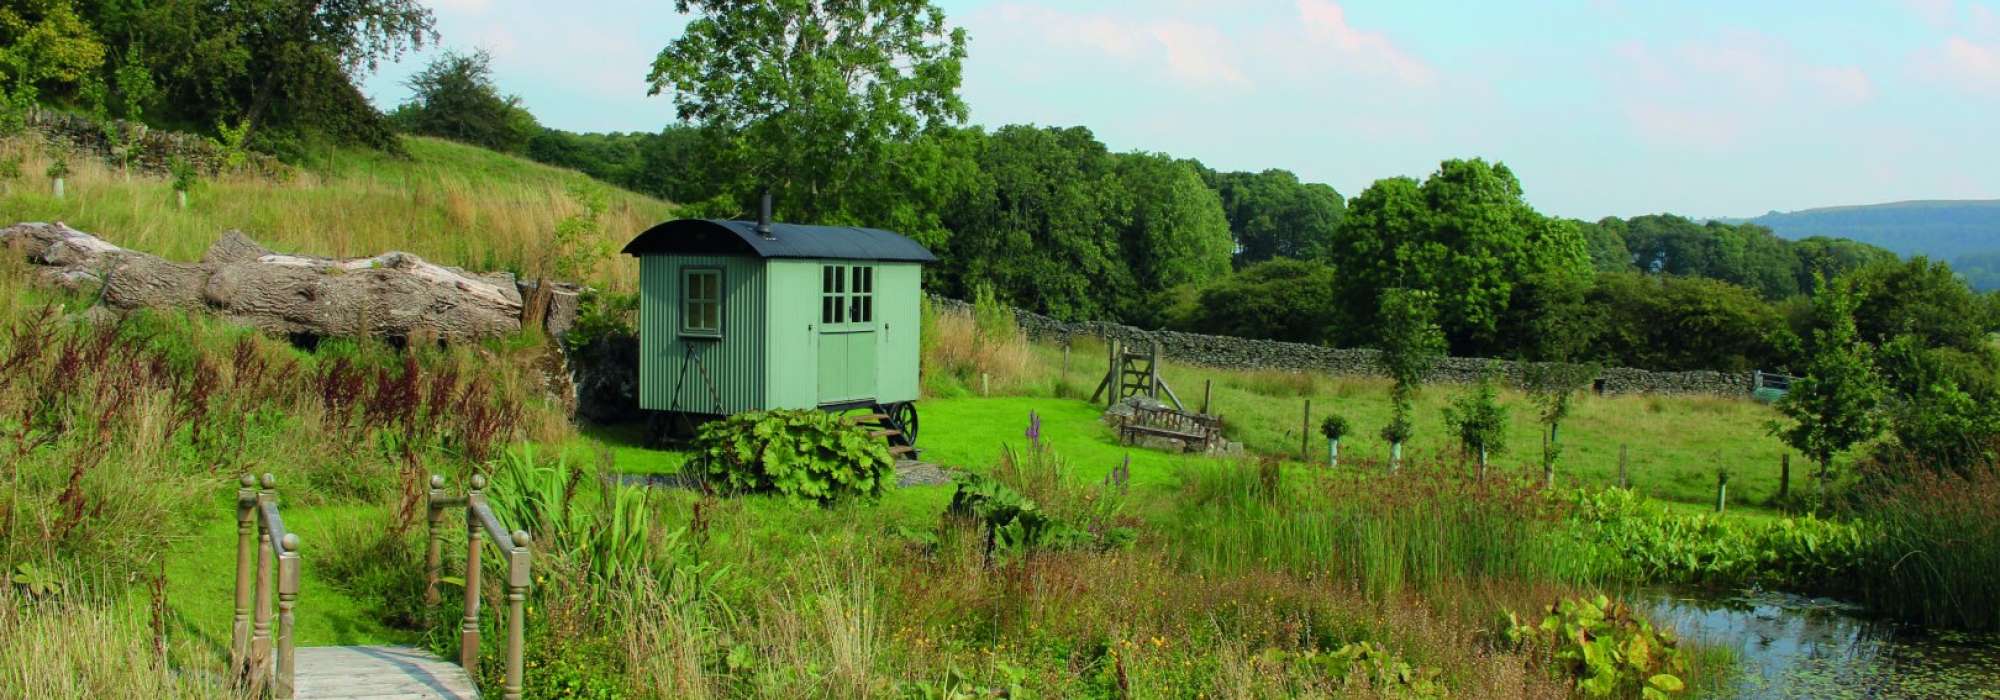 Farm diversification project of small shepherds hut accommodation on land